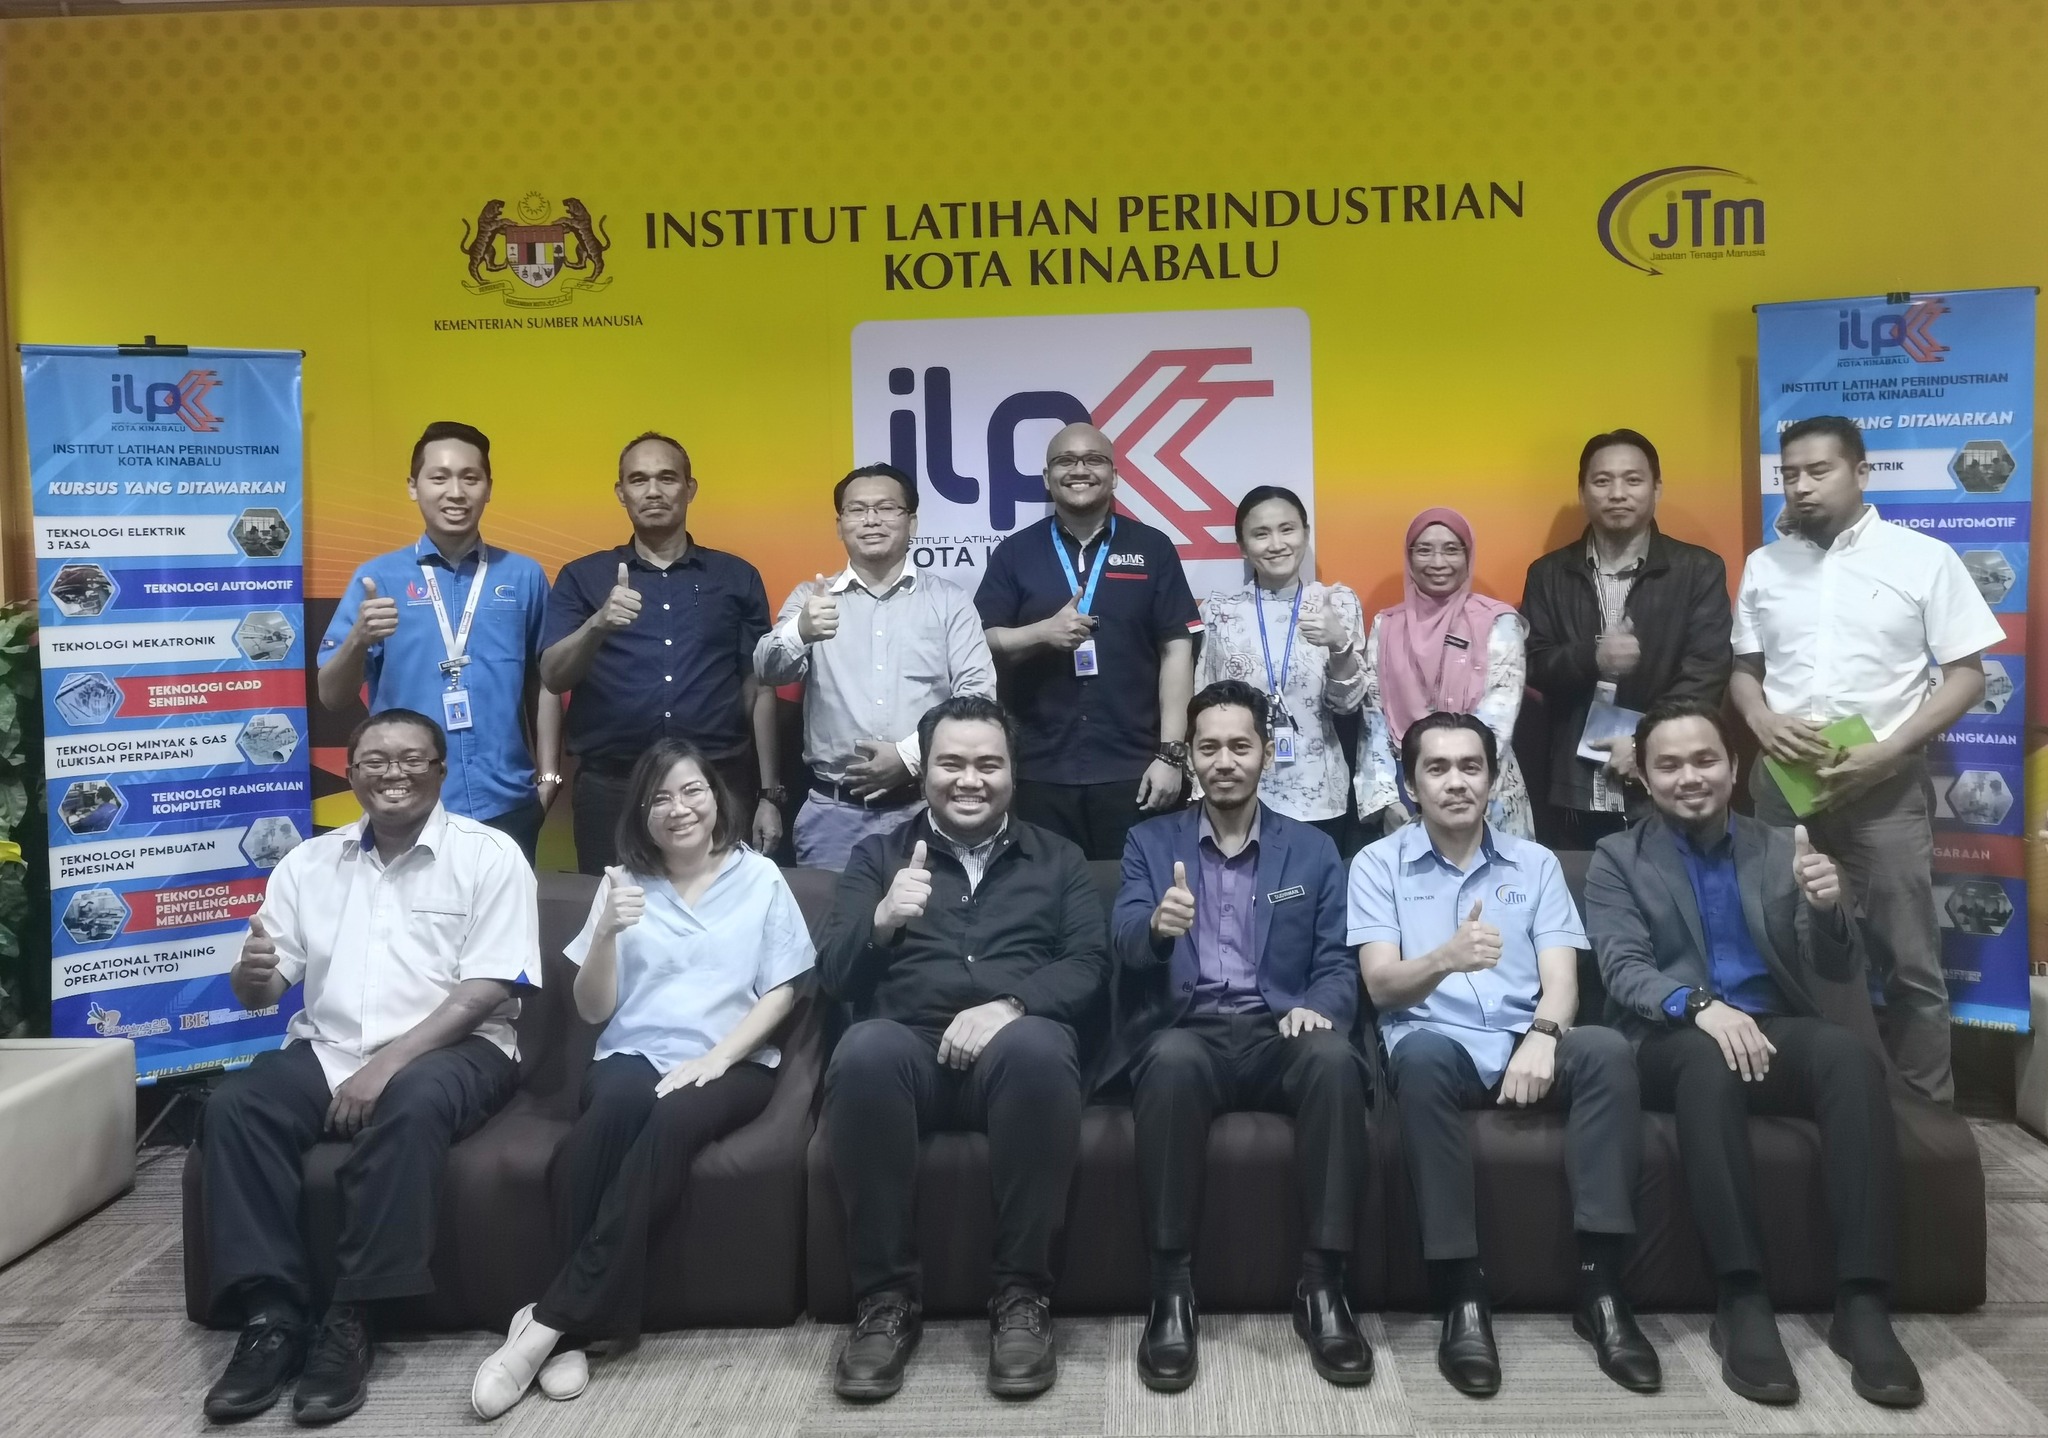 Audit Pentauliahan Pensijilan Semula Sistem Pengurusan Keselamatan & Kesihatan Pekerjaan ISO 45001:2018 di ILP Kota Kinabalu